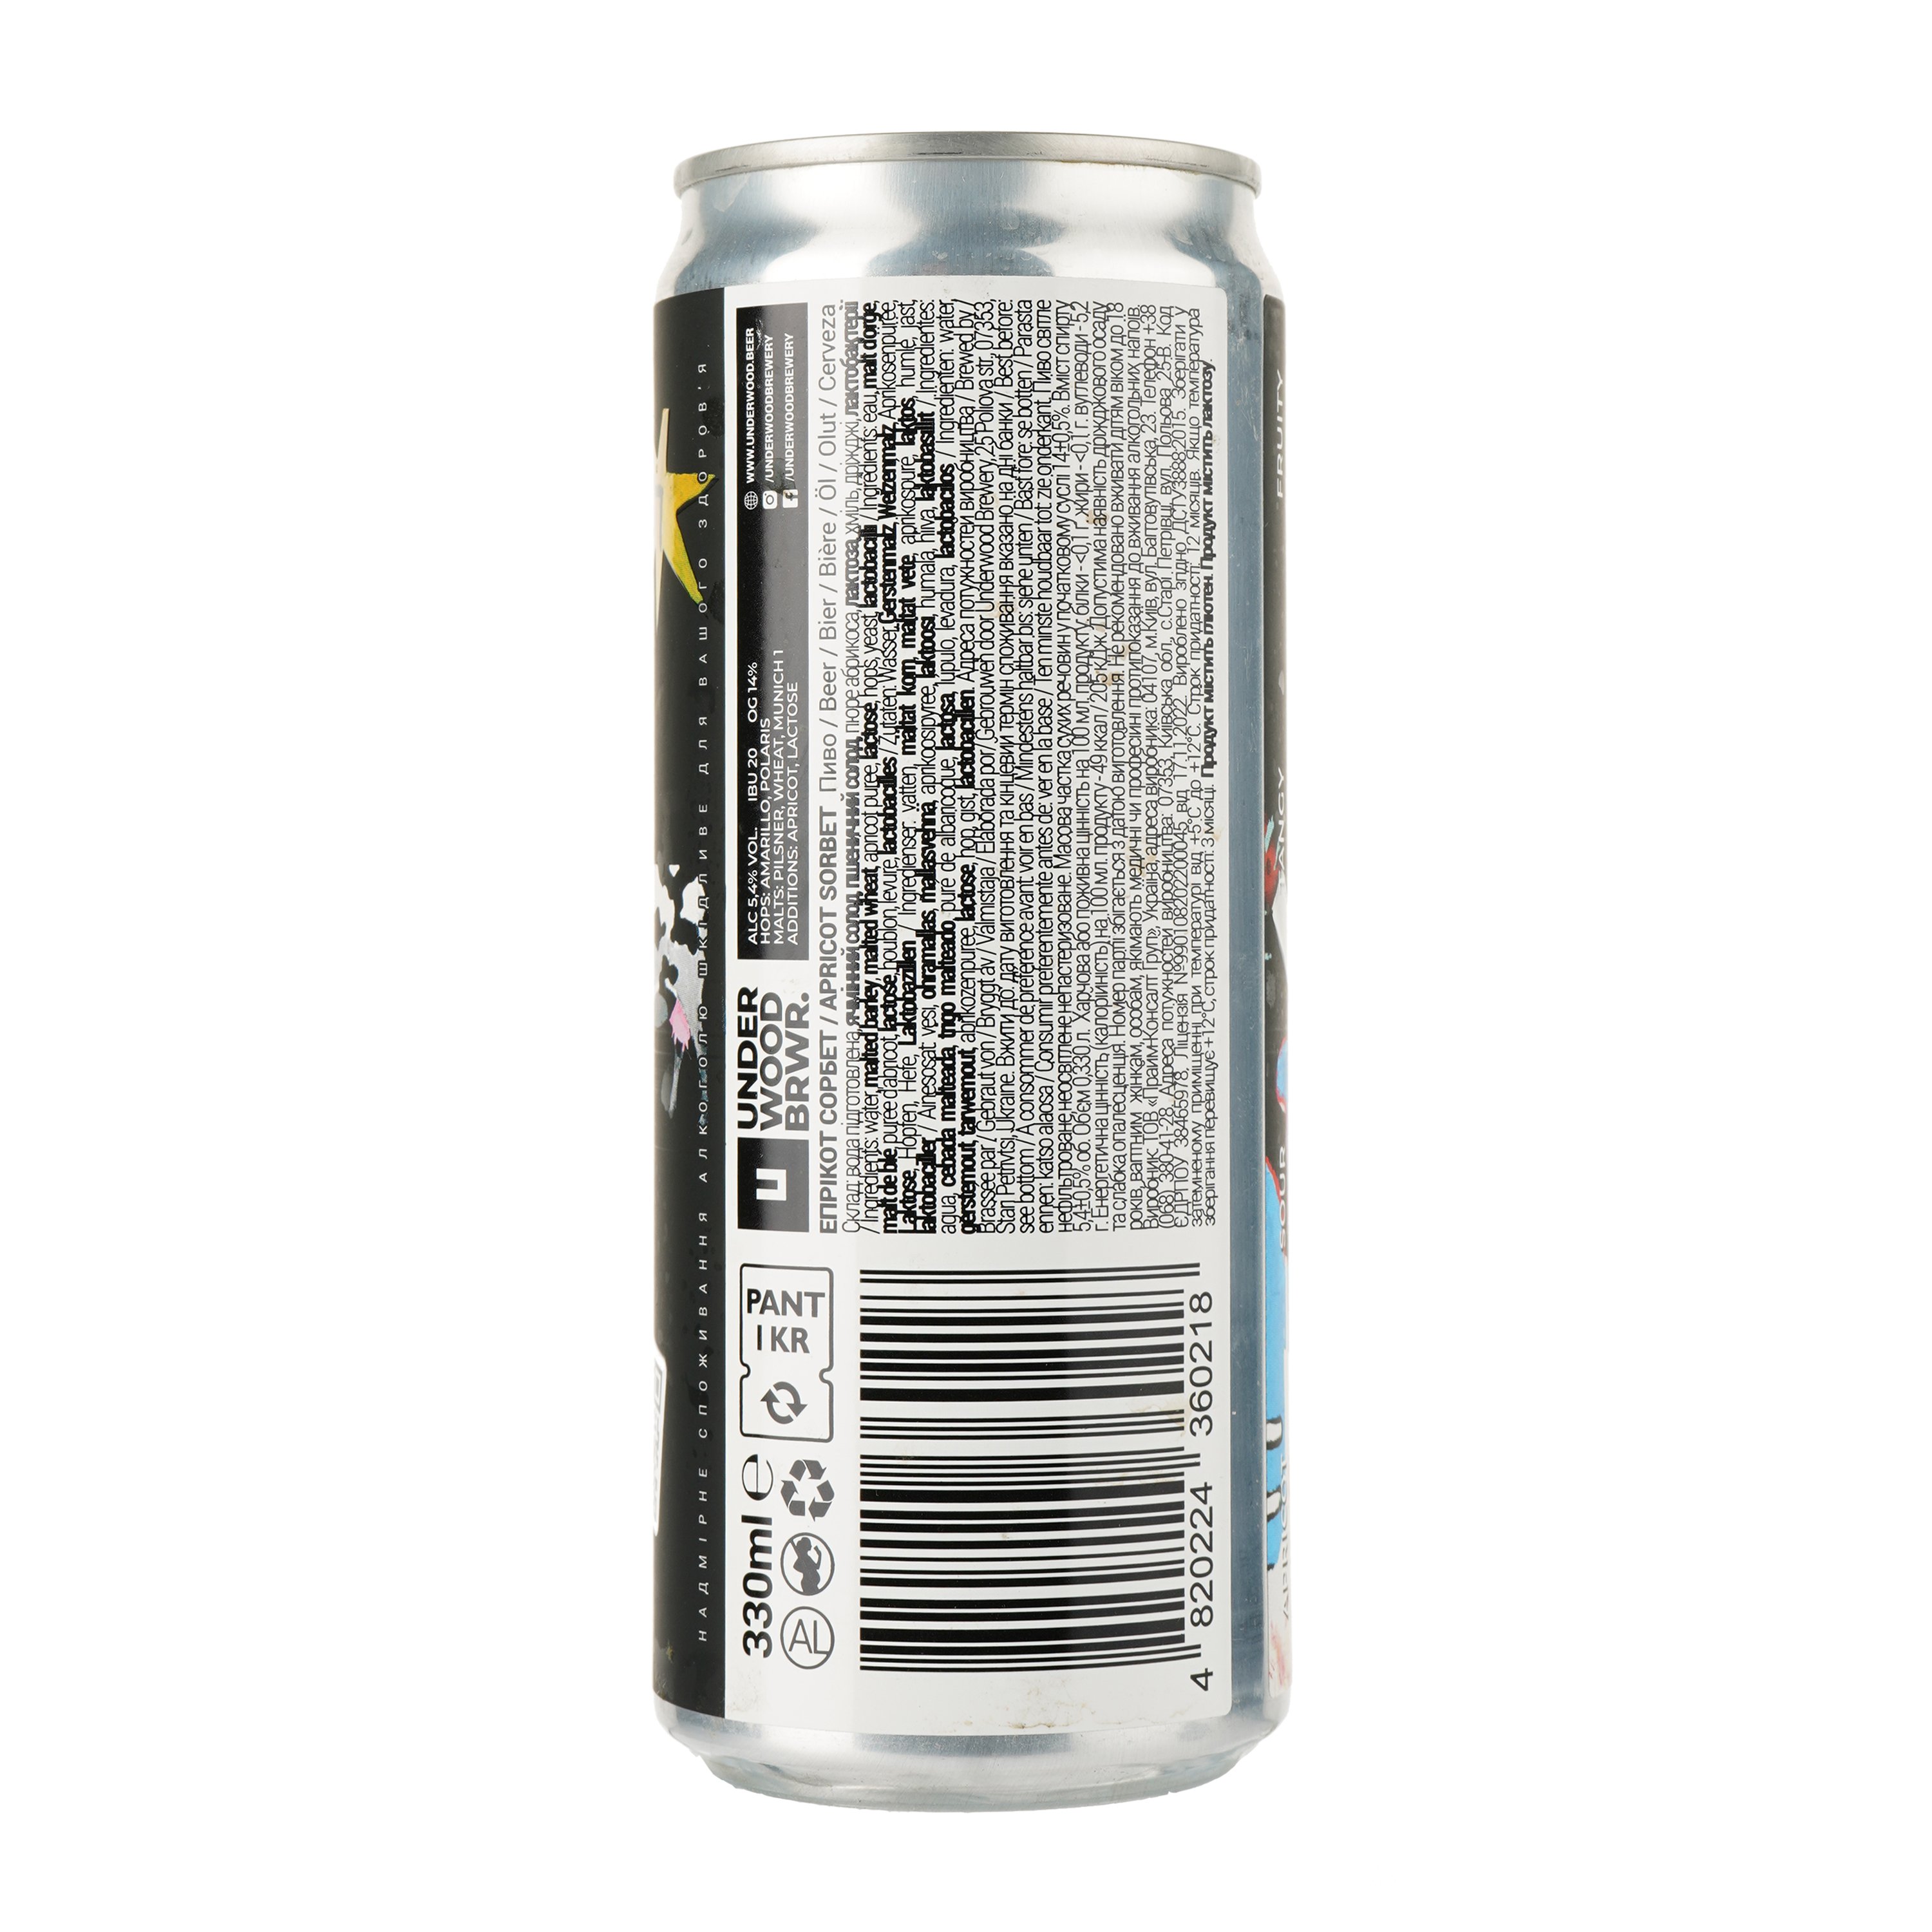 Пиво Underwood Brewery Apricot Sorbet, світле, 5,4%, з/б, 0,33 л (862187) - фото 4